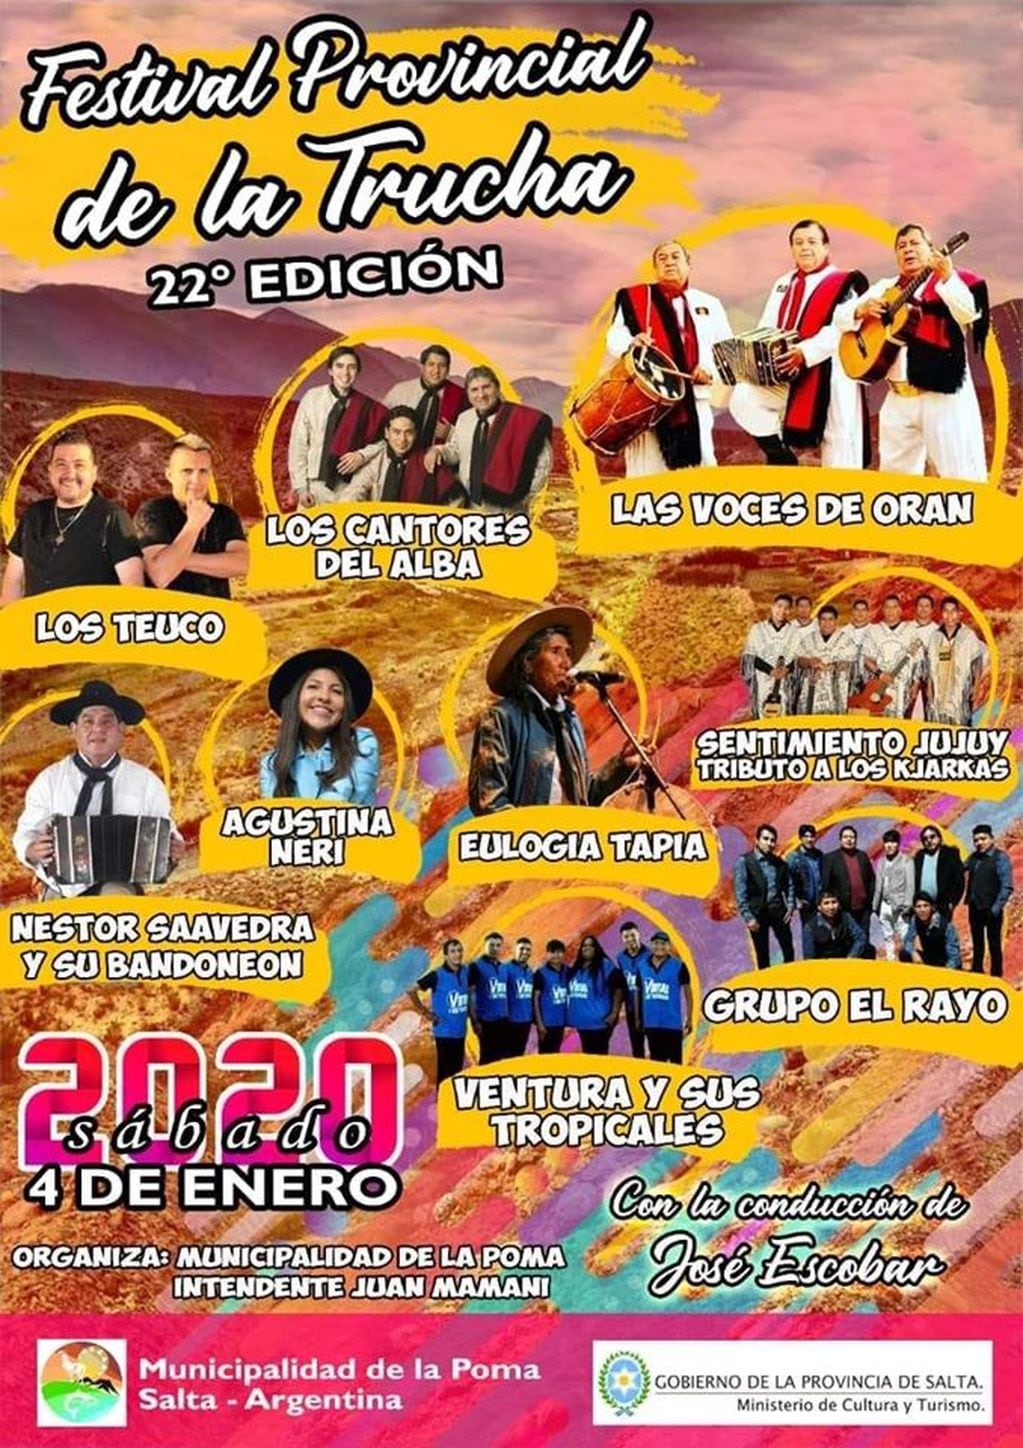 22ª edición del festival Provincial de la Trucha (Facebook Municipalidad de la Poma Salta)